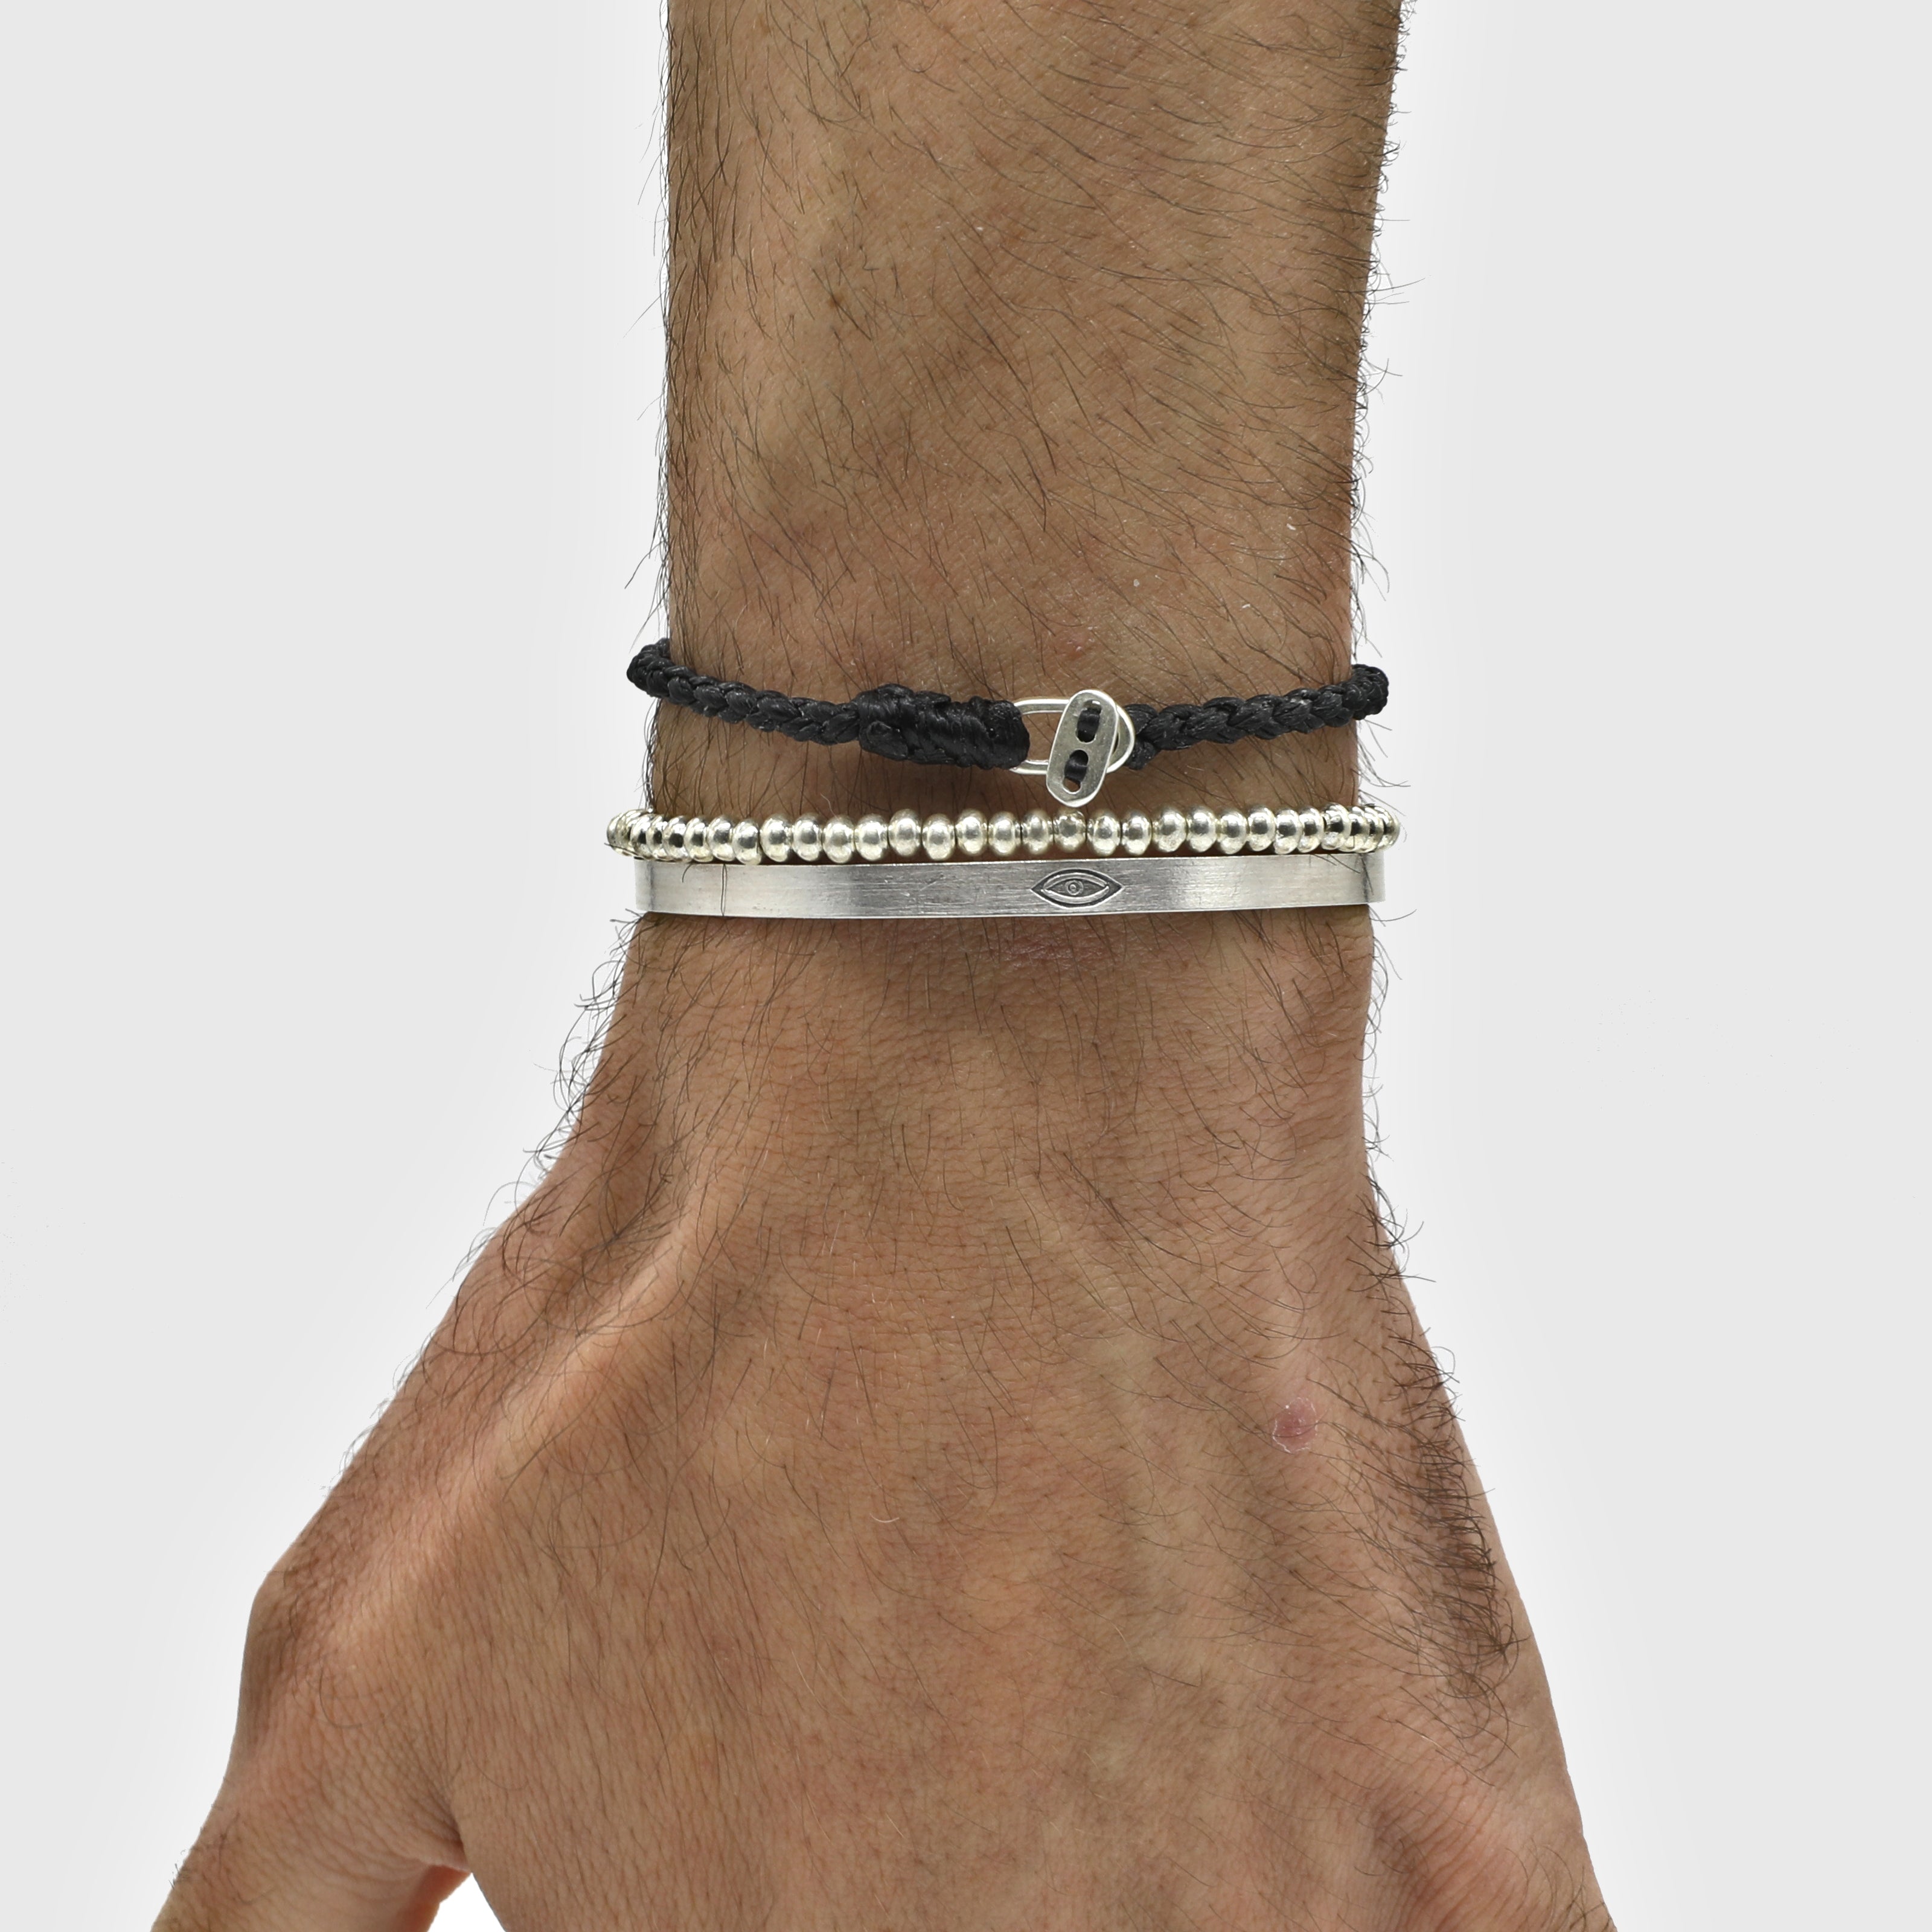 4mm Braided Bracelet With Sterling Silver Clasp (Black)-Bracelet-Kompsós